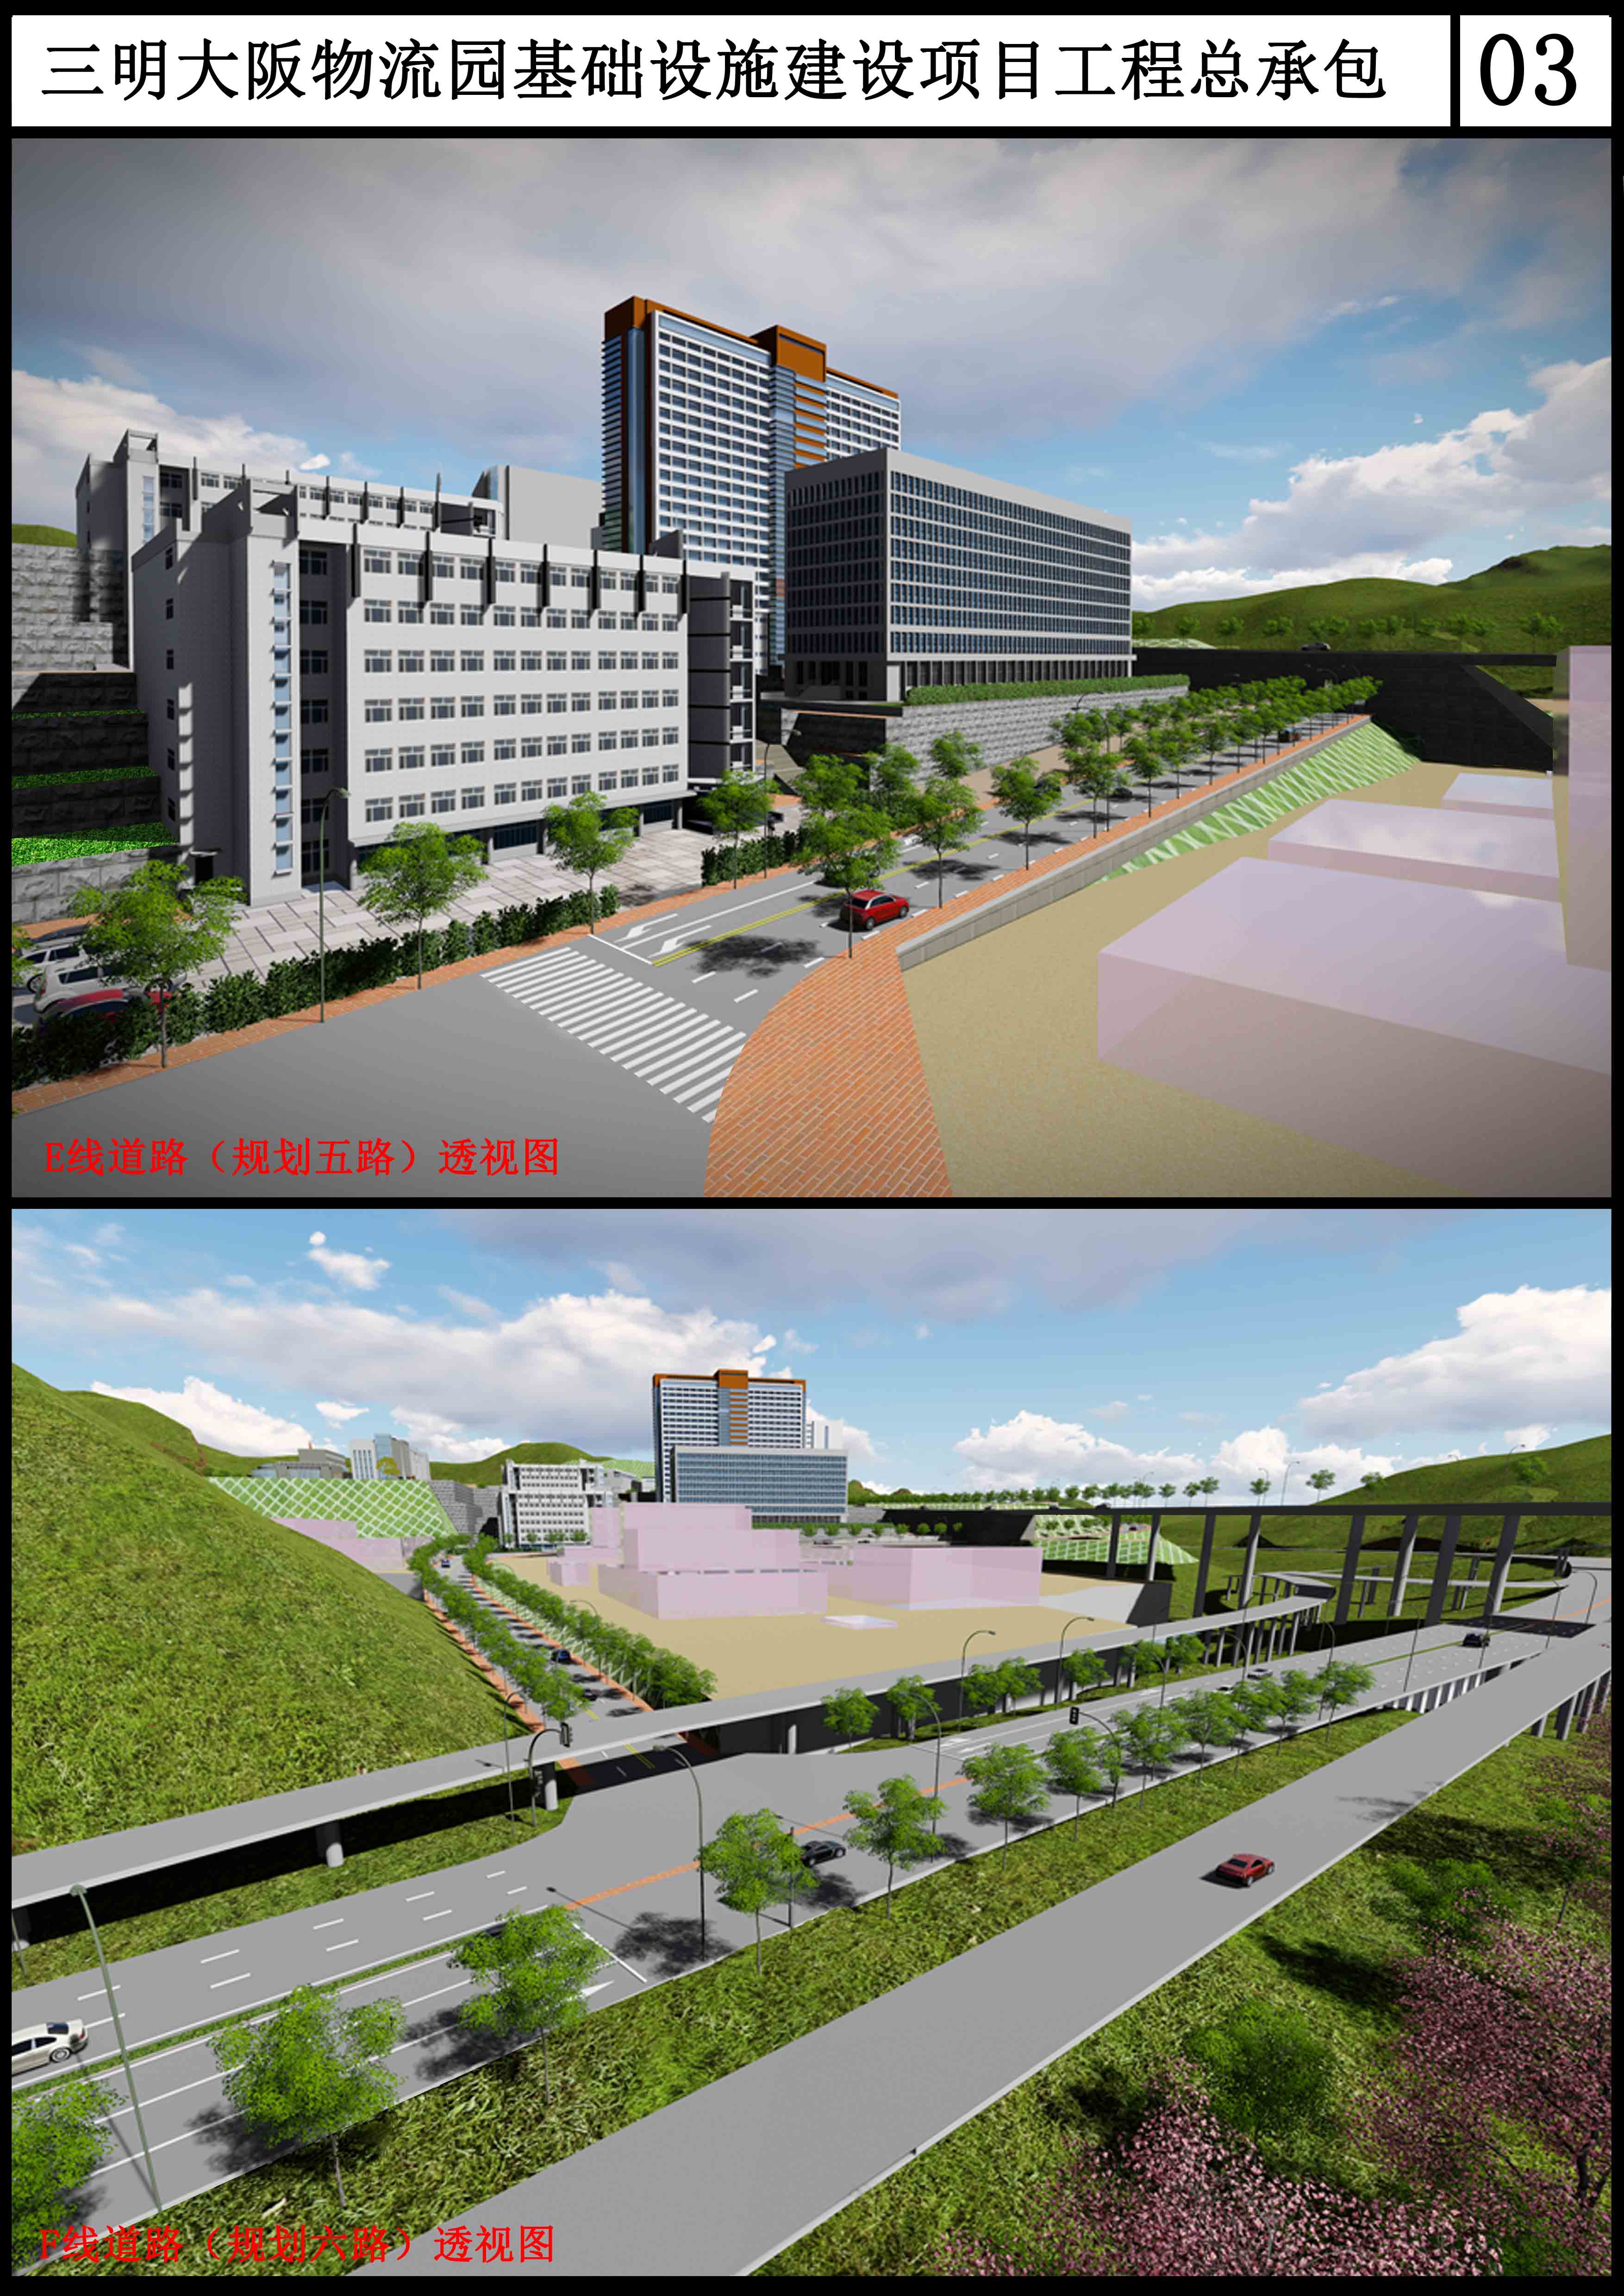 三明大坂物流园基础设施建设项目规划五路透视图.jpg